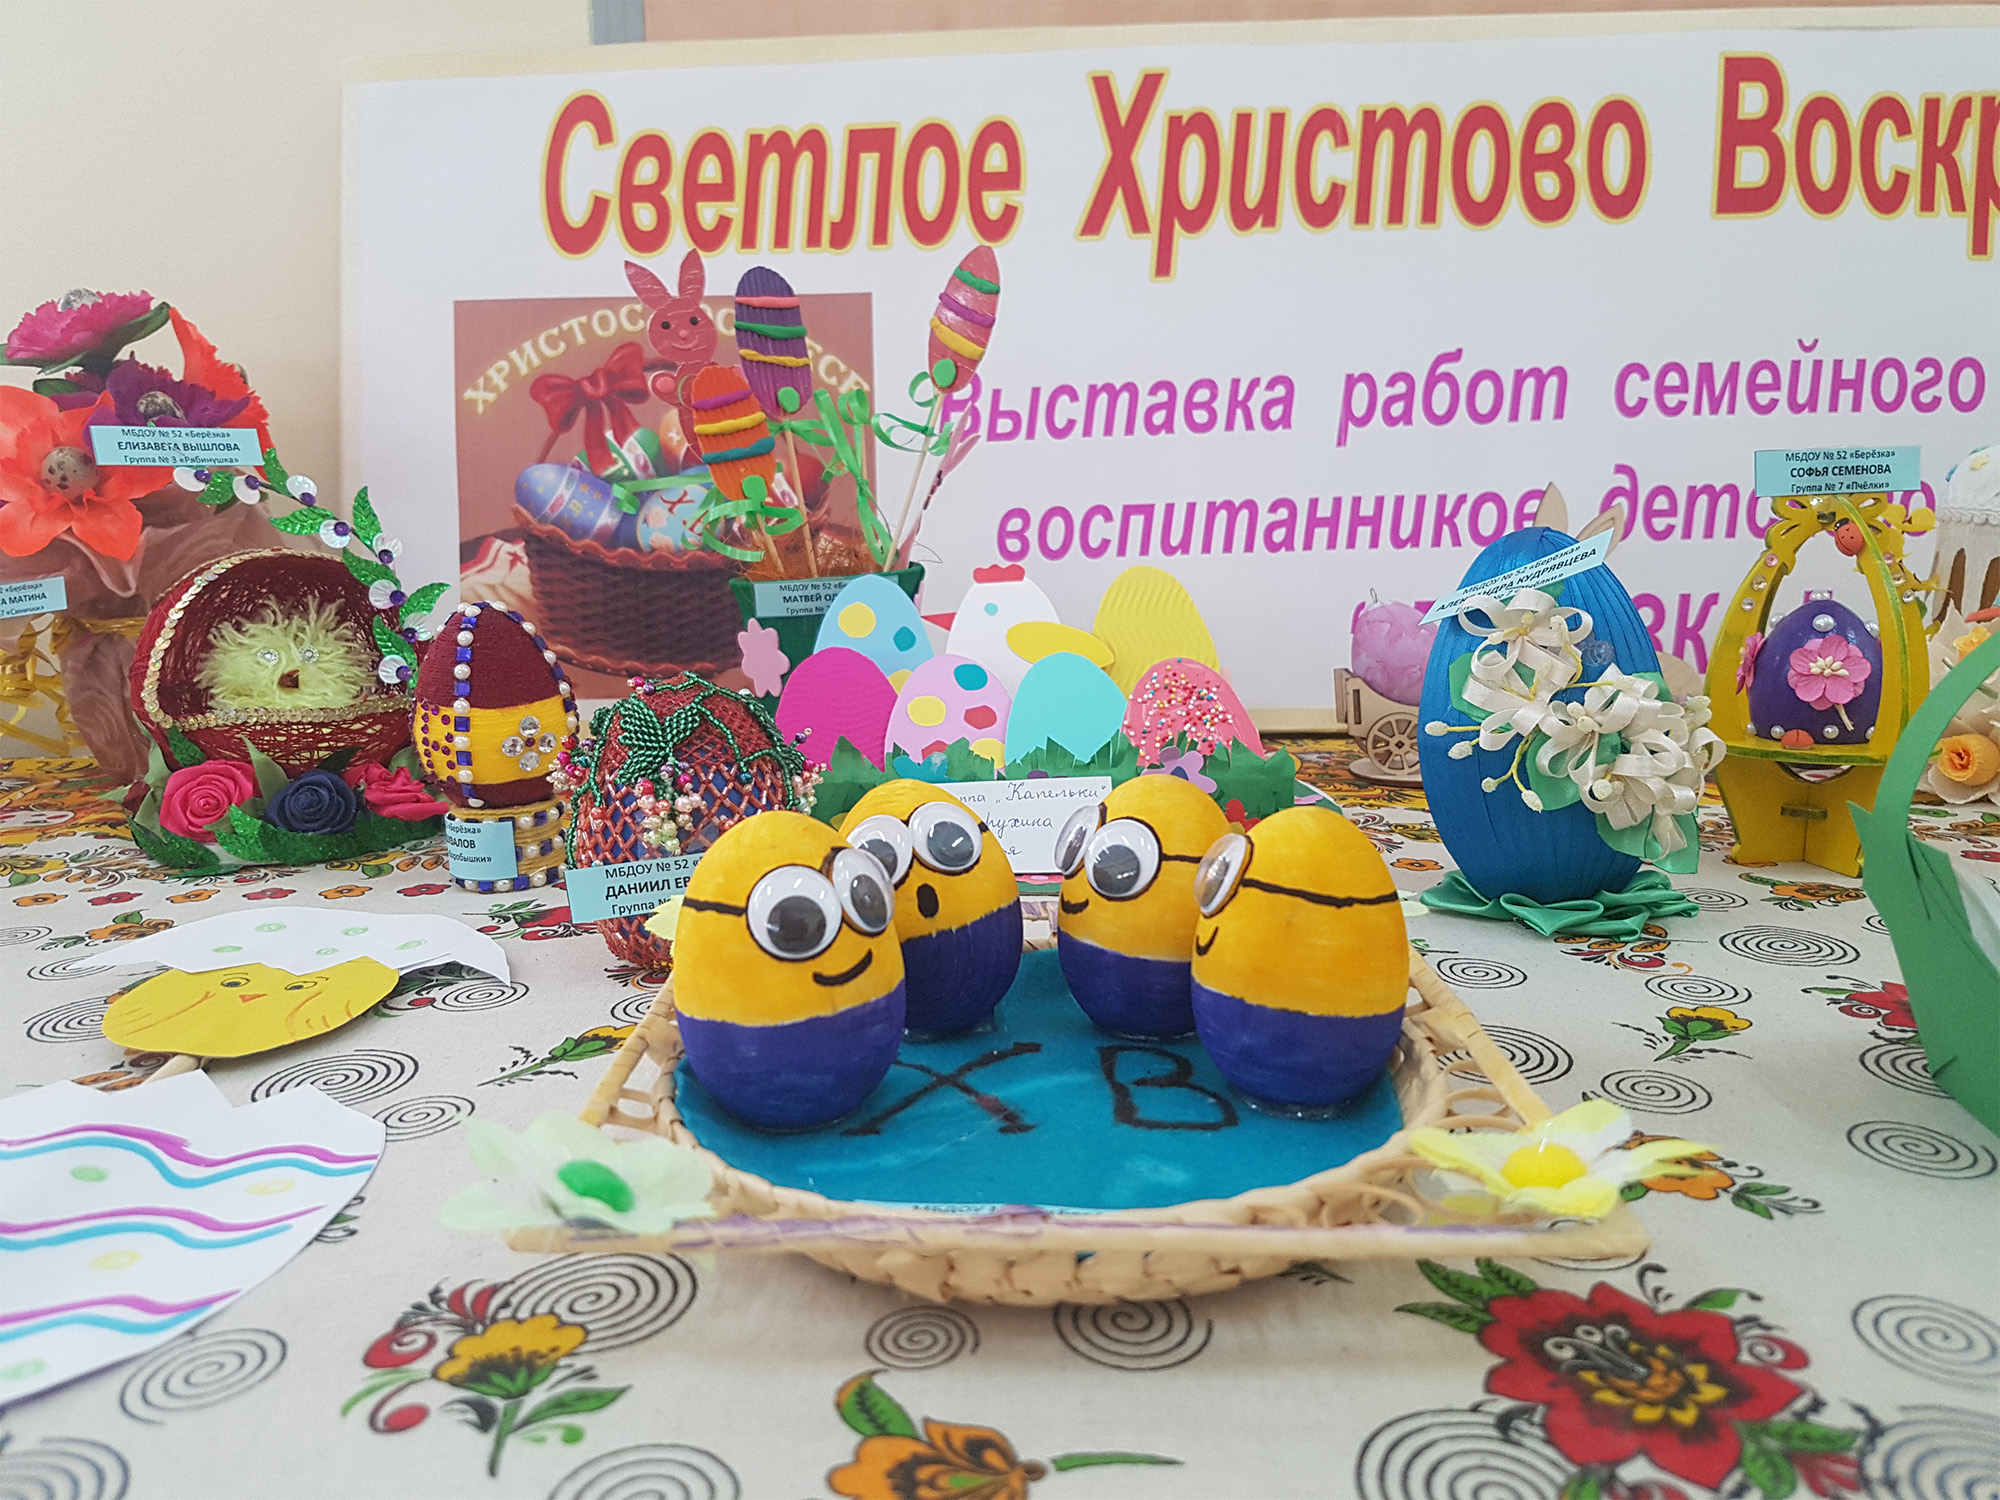 Выставка работ семейного творчества в Центре культуры "Подмосковье"